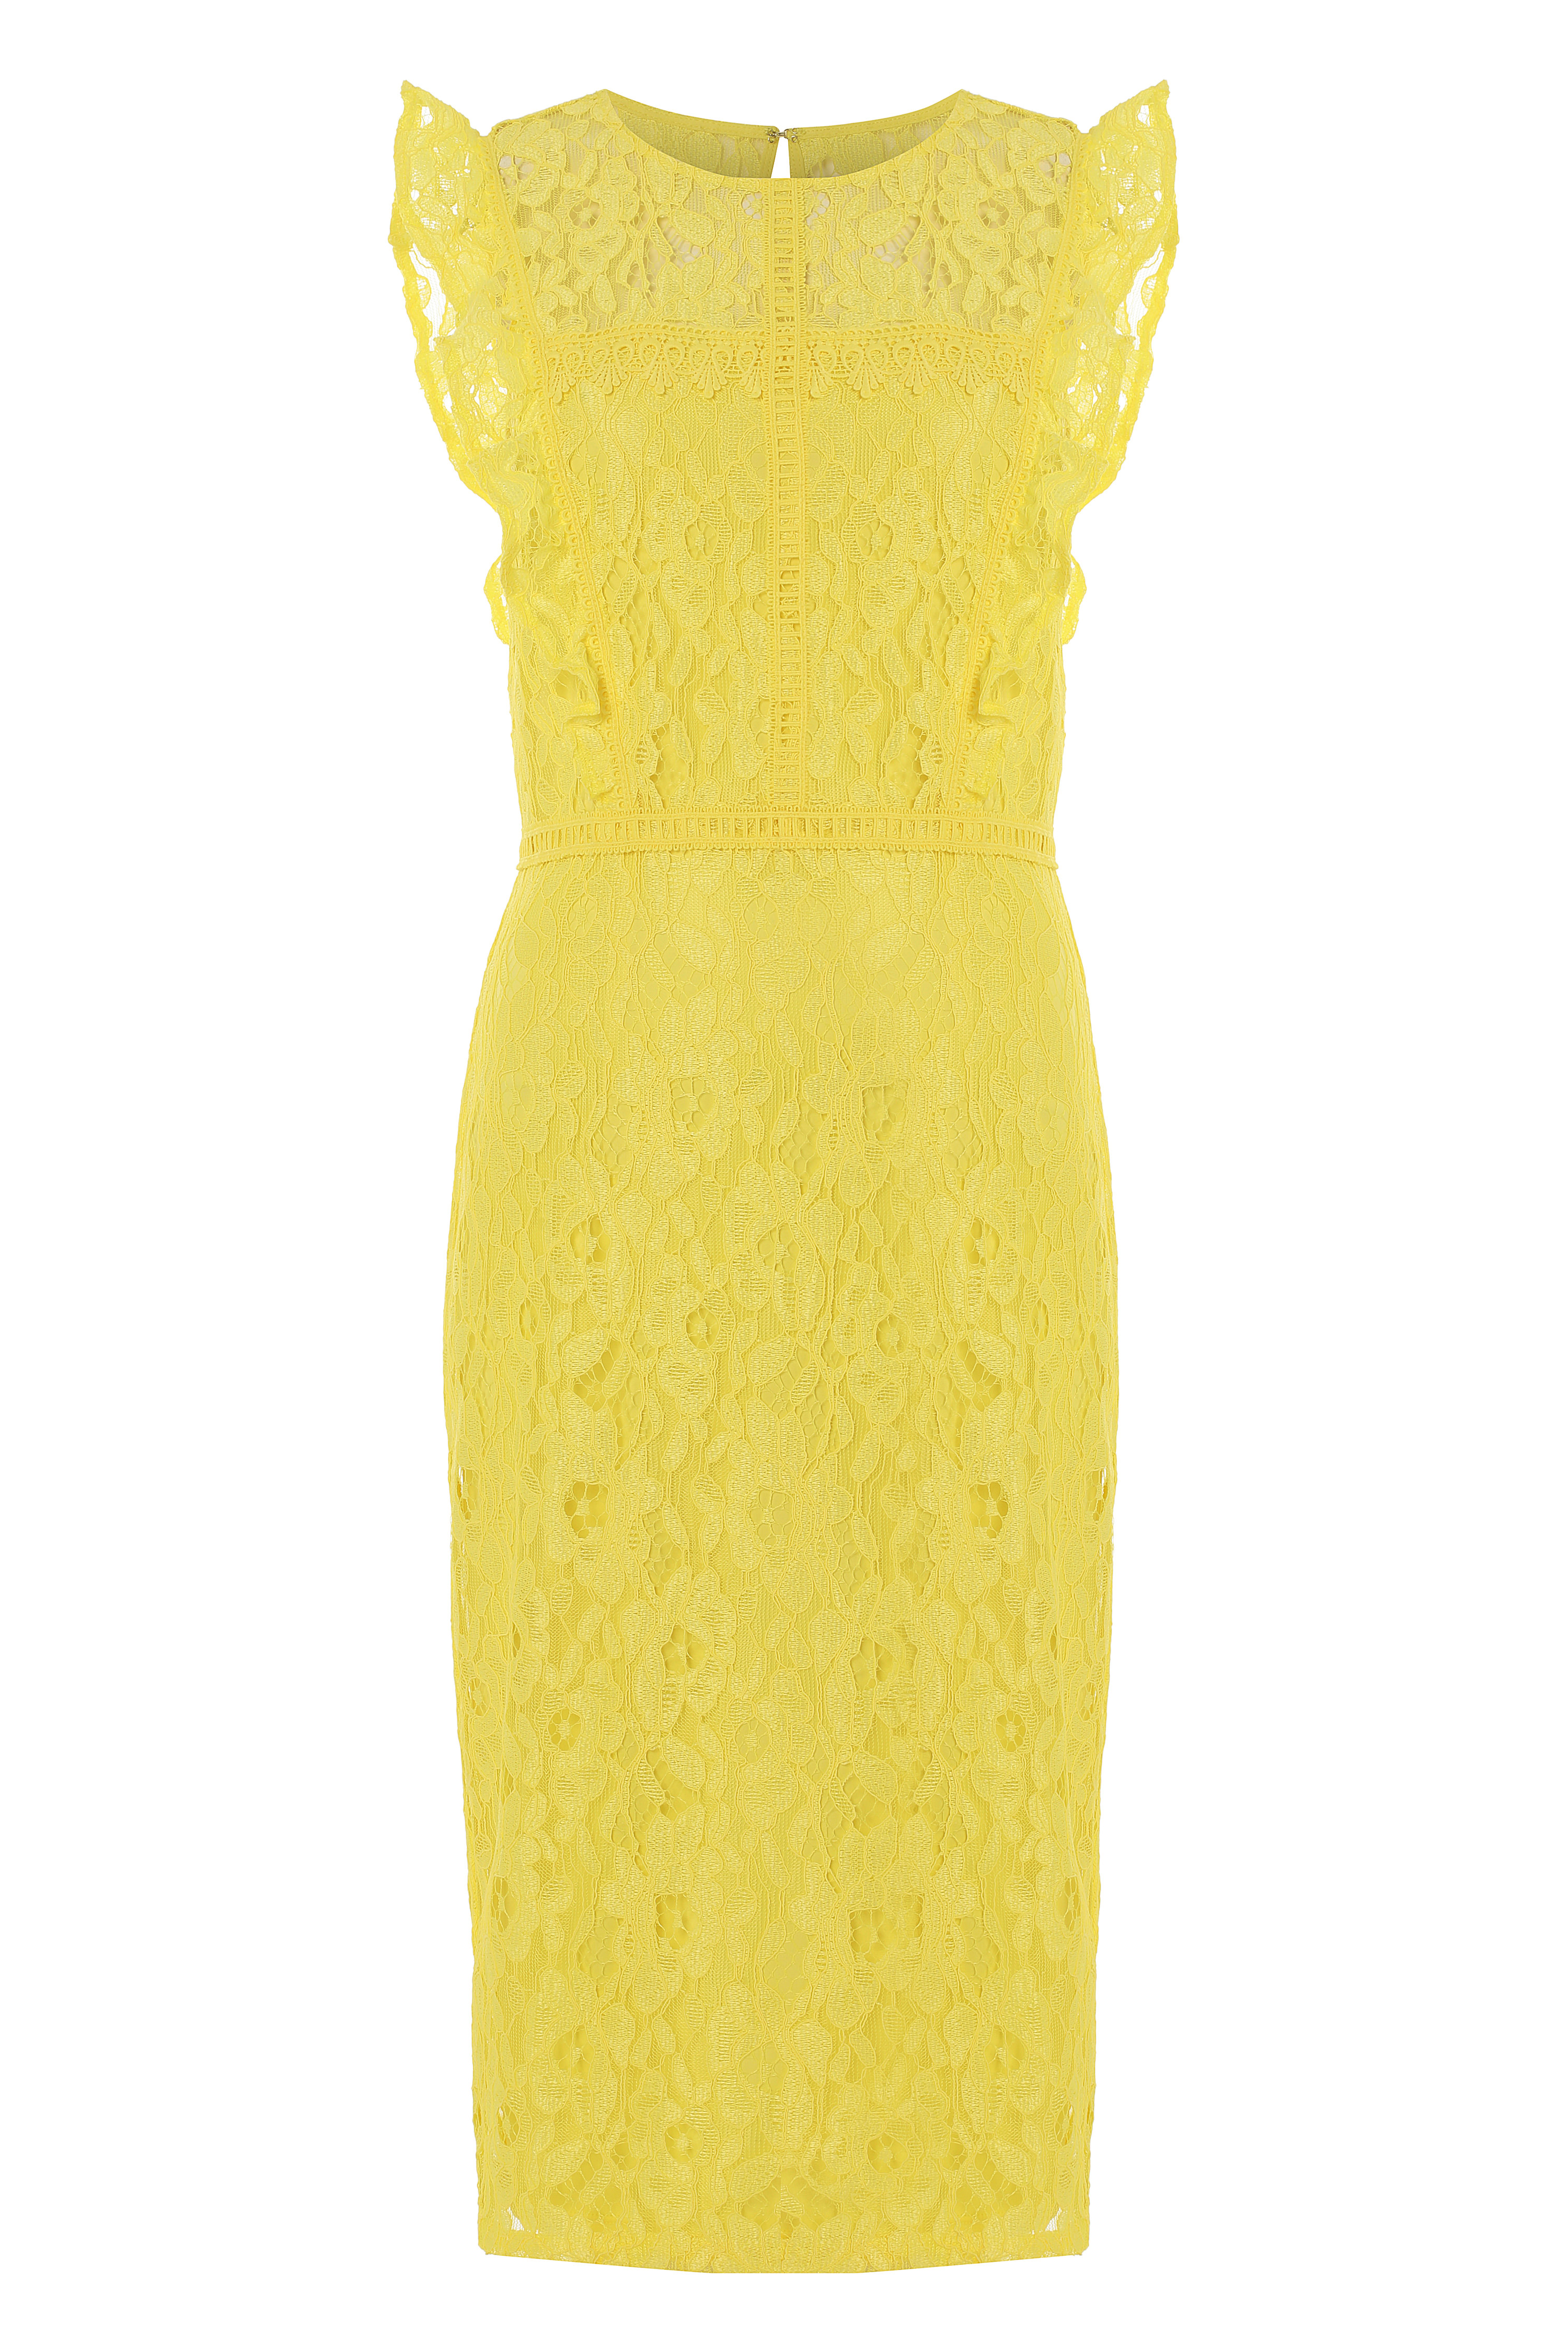 Yellow Lace Ruffle Dress, Image 5 of 5